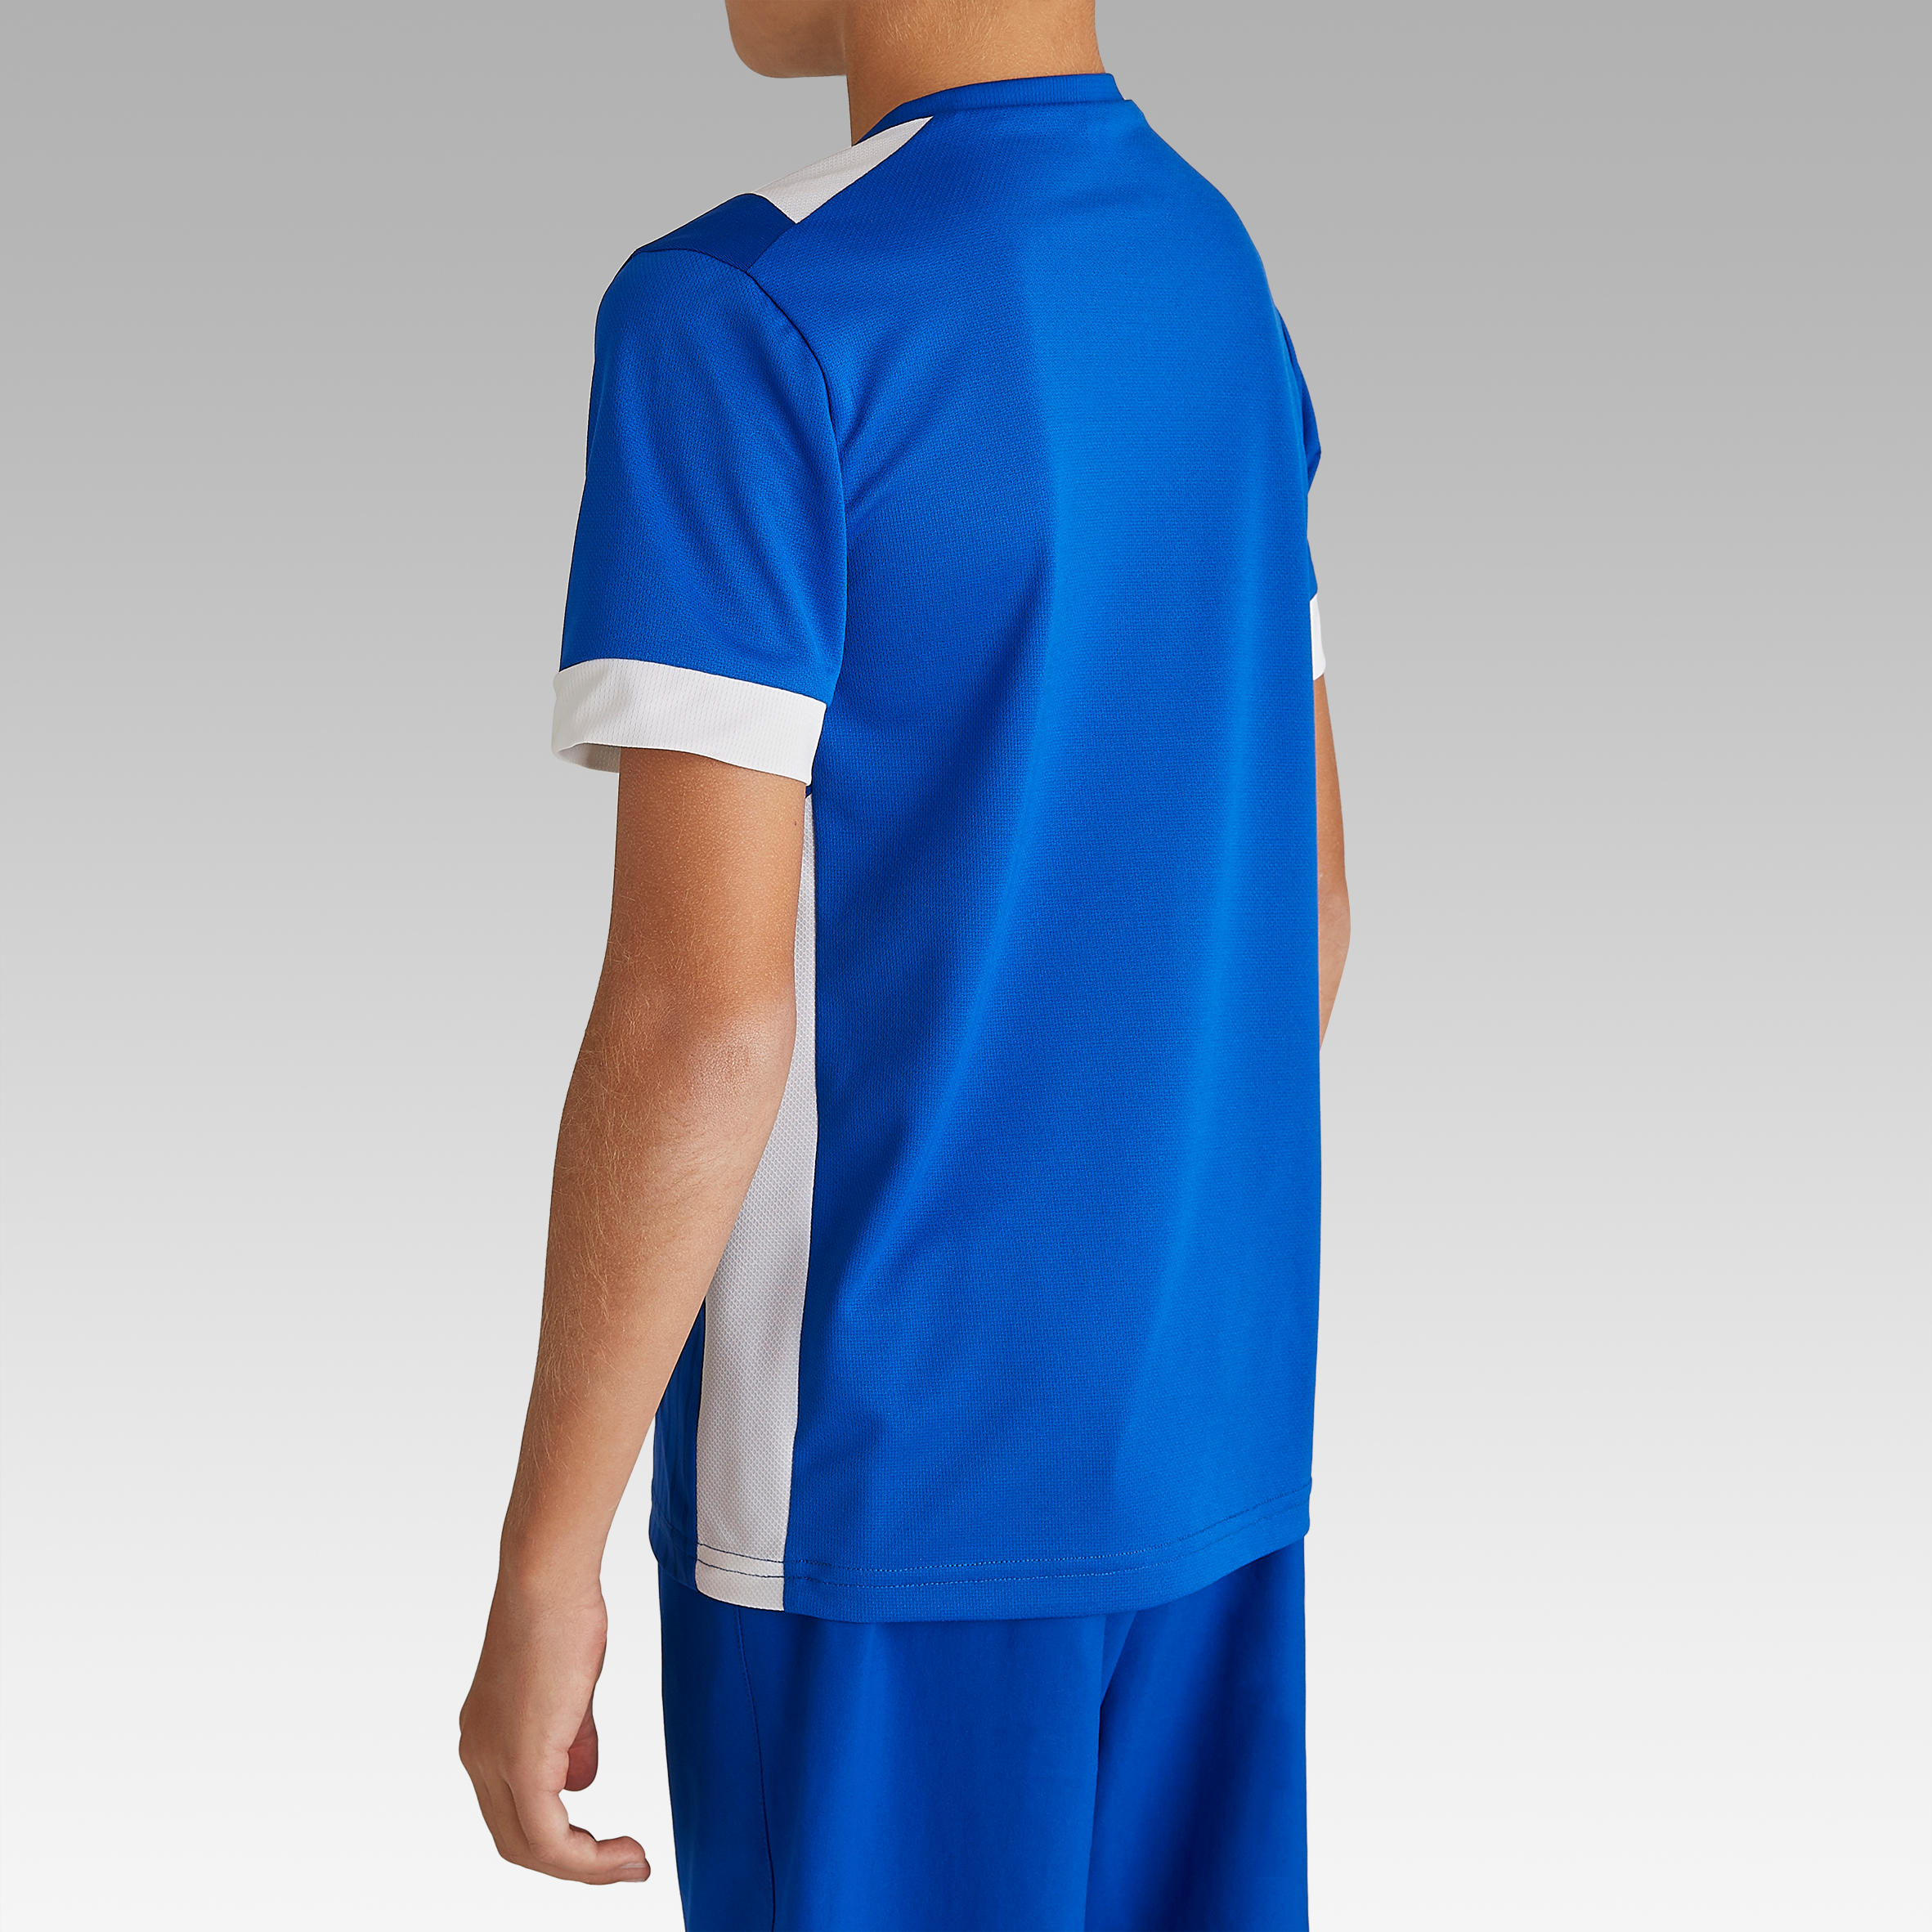 Kids' Short-Sleeved Football Shirt F500 - Blue 5/9